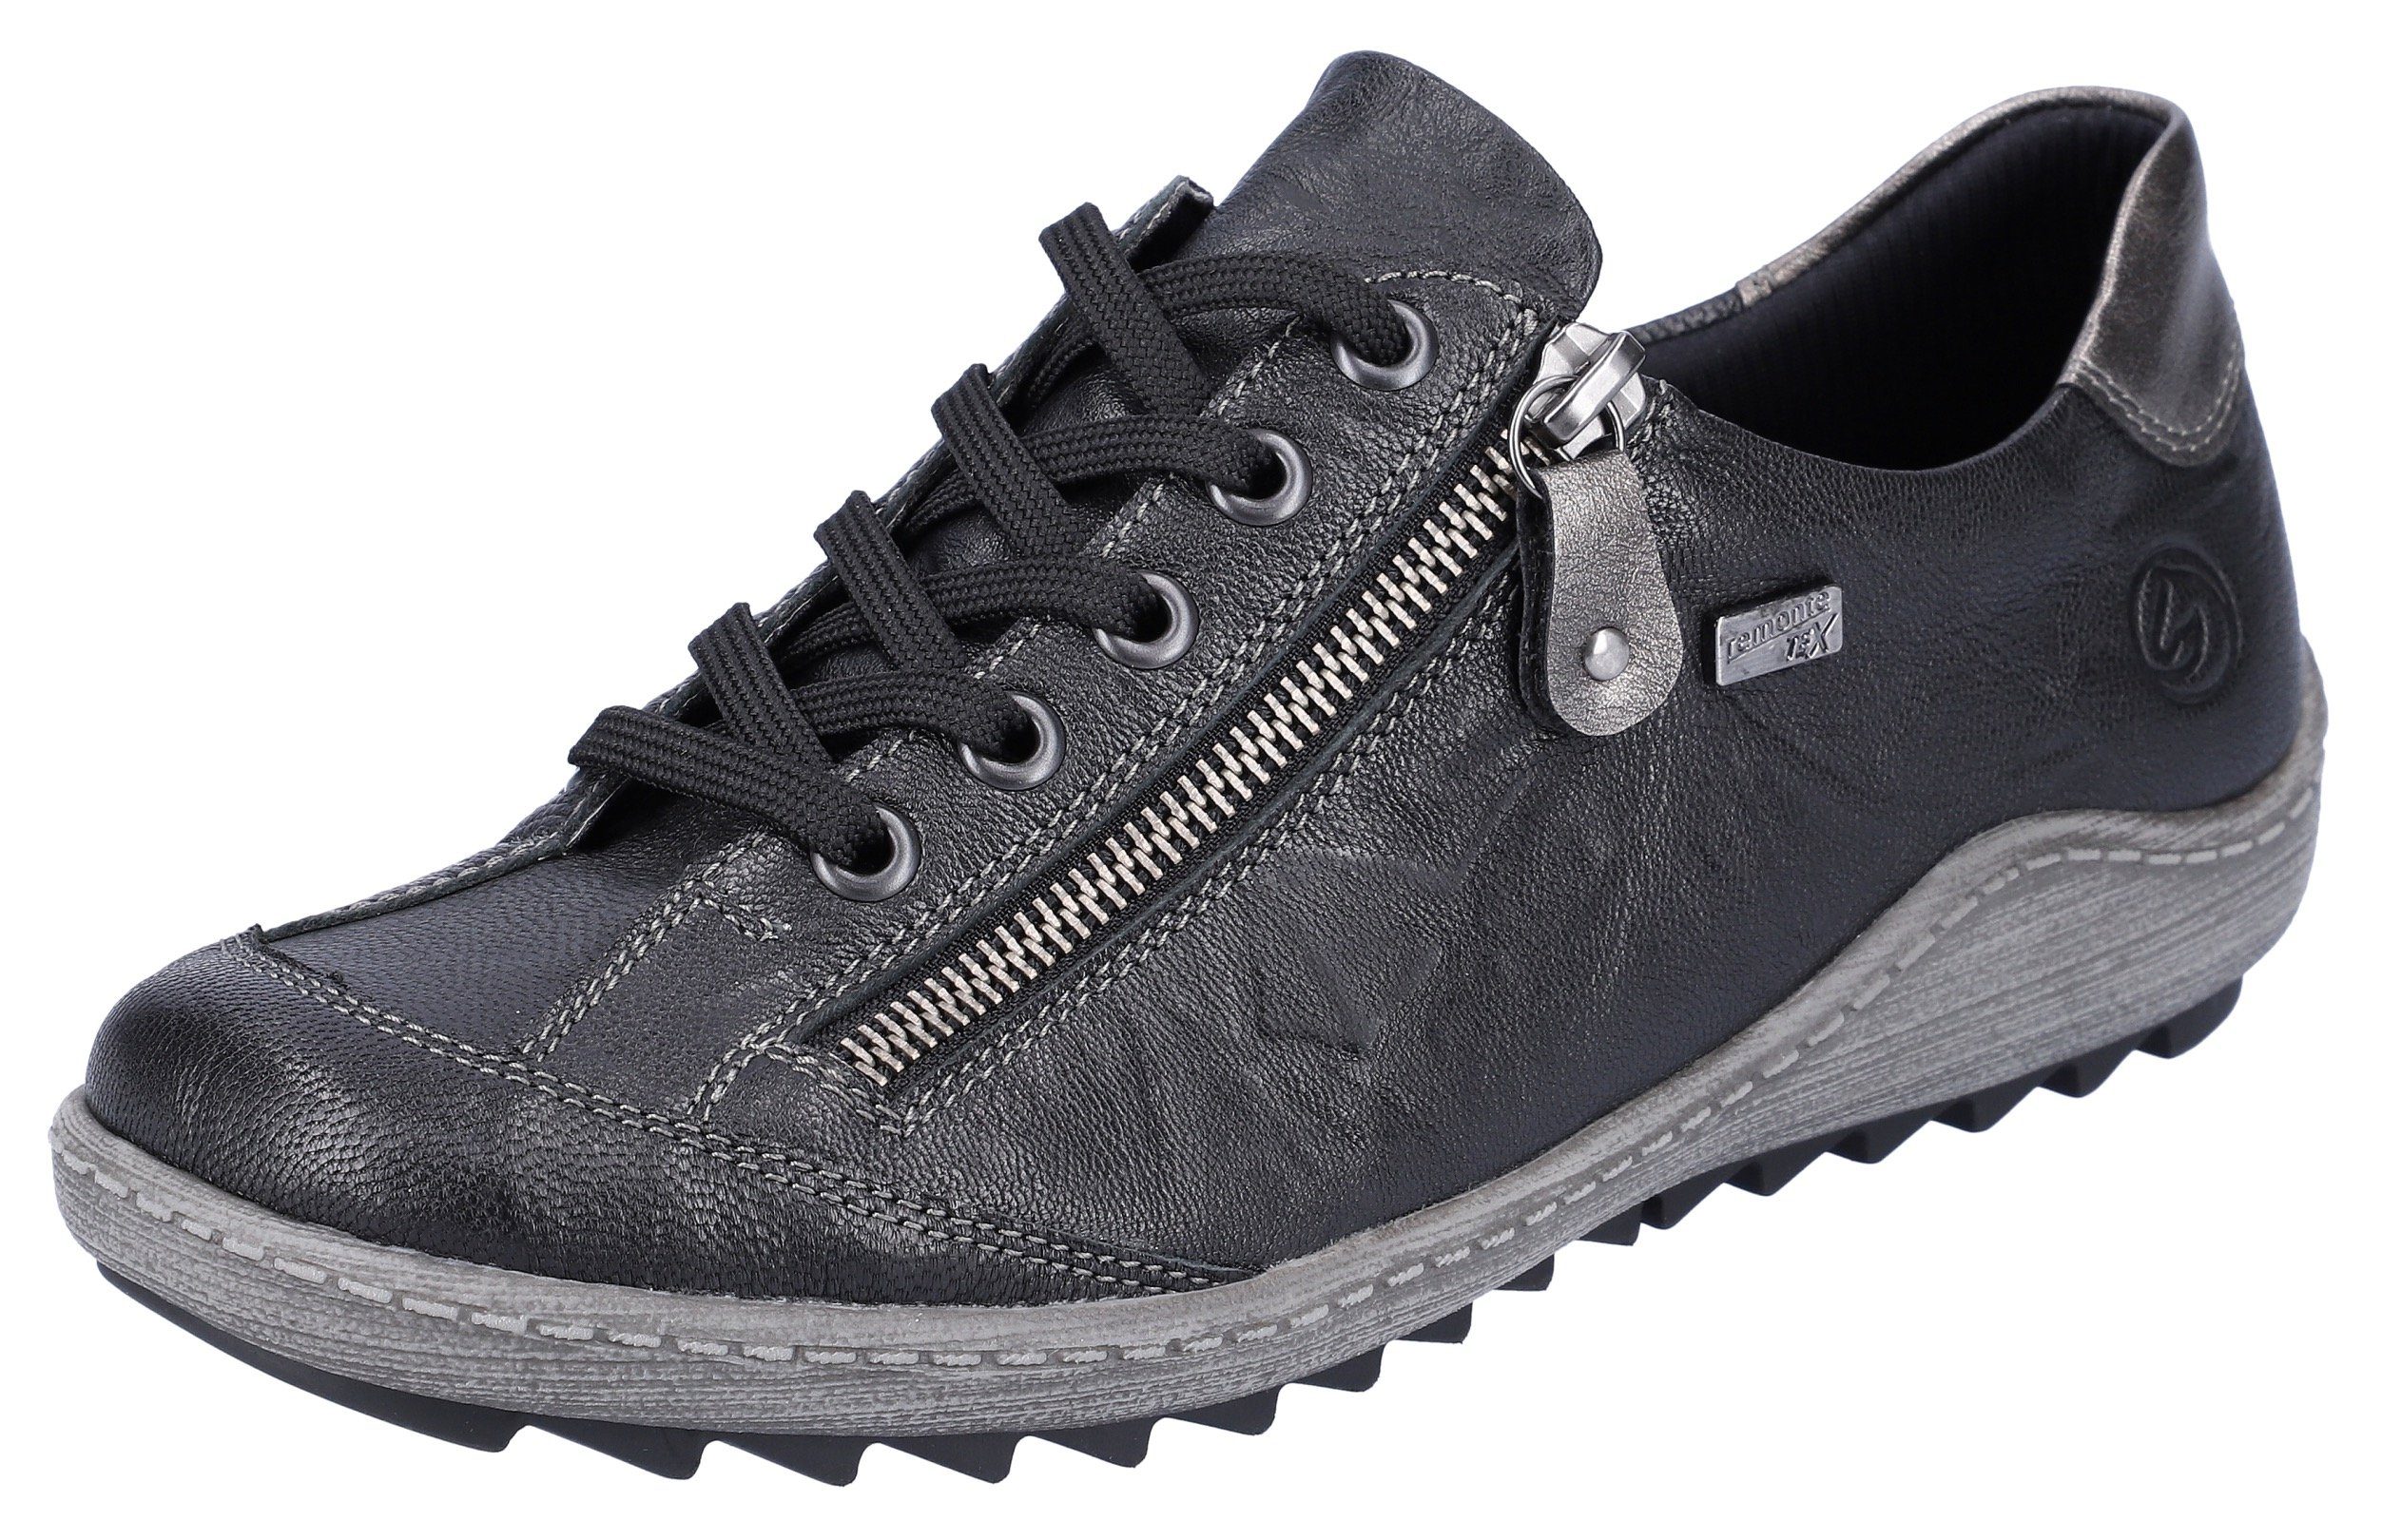 Schoenen Lage schoenen Veterschoenen MARC art of walking Veterschoenen zwart klassieke stijl 